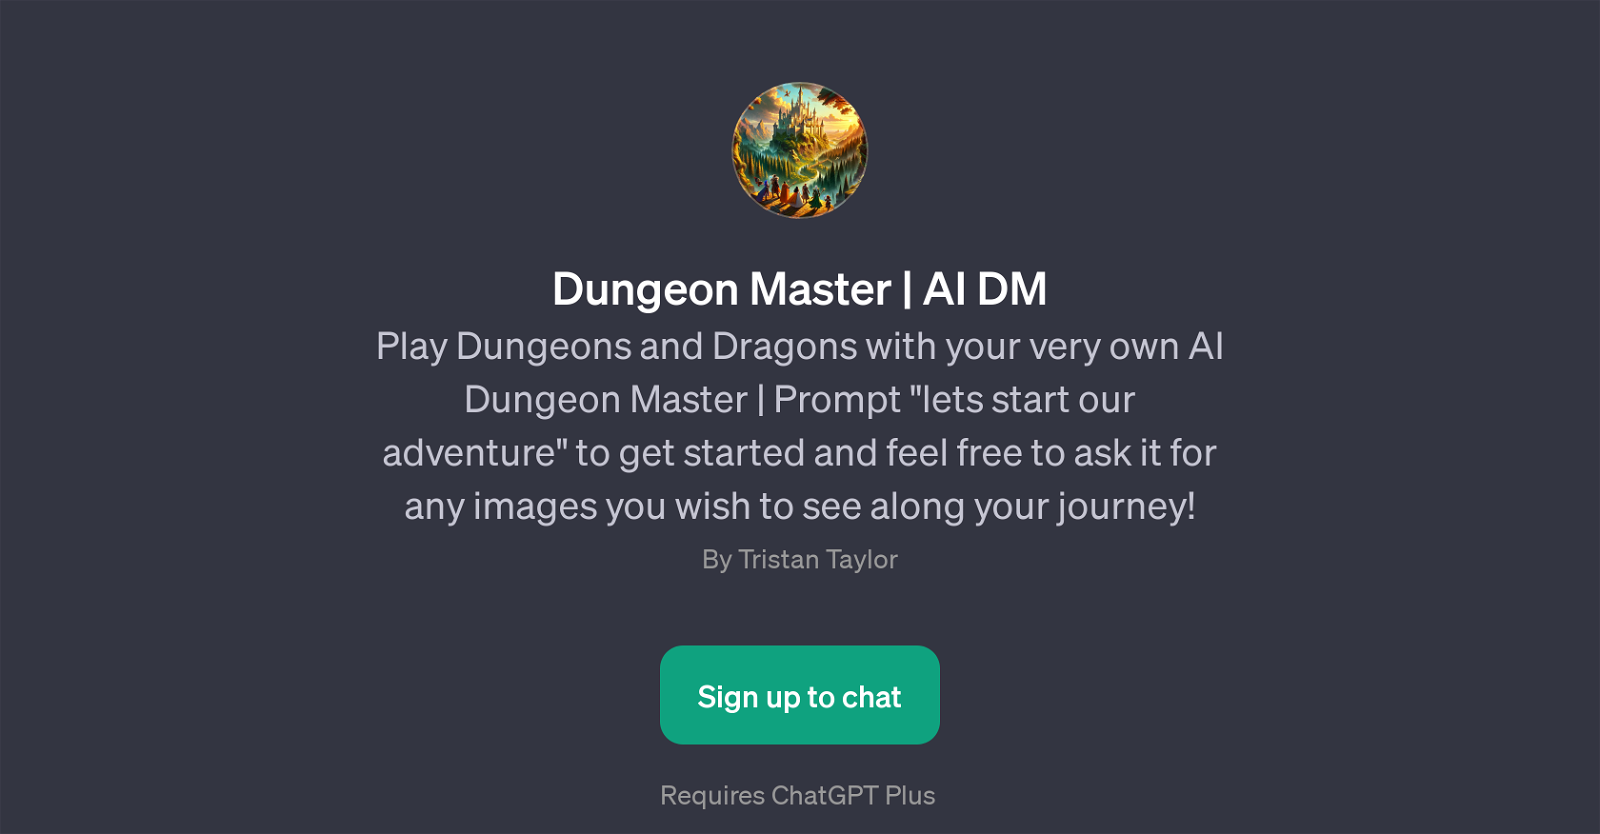 Dungeon Master AI DM website